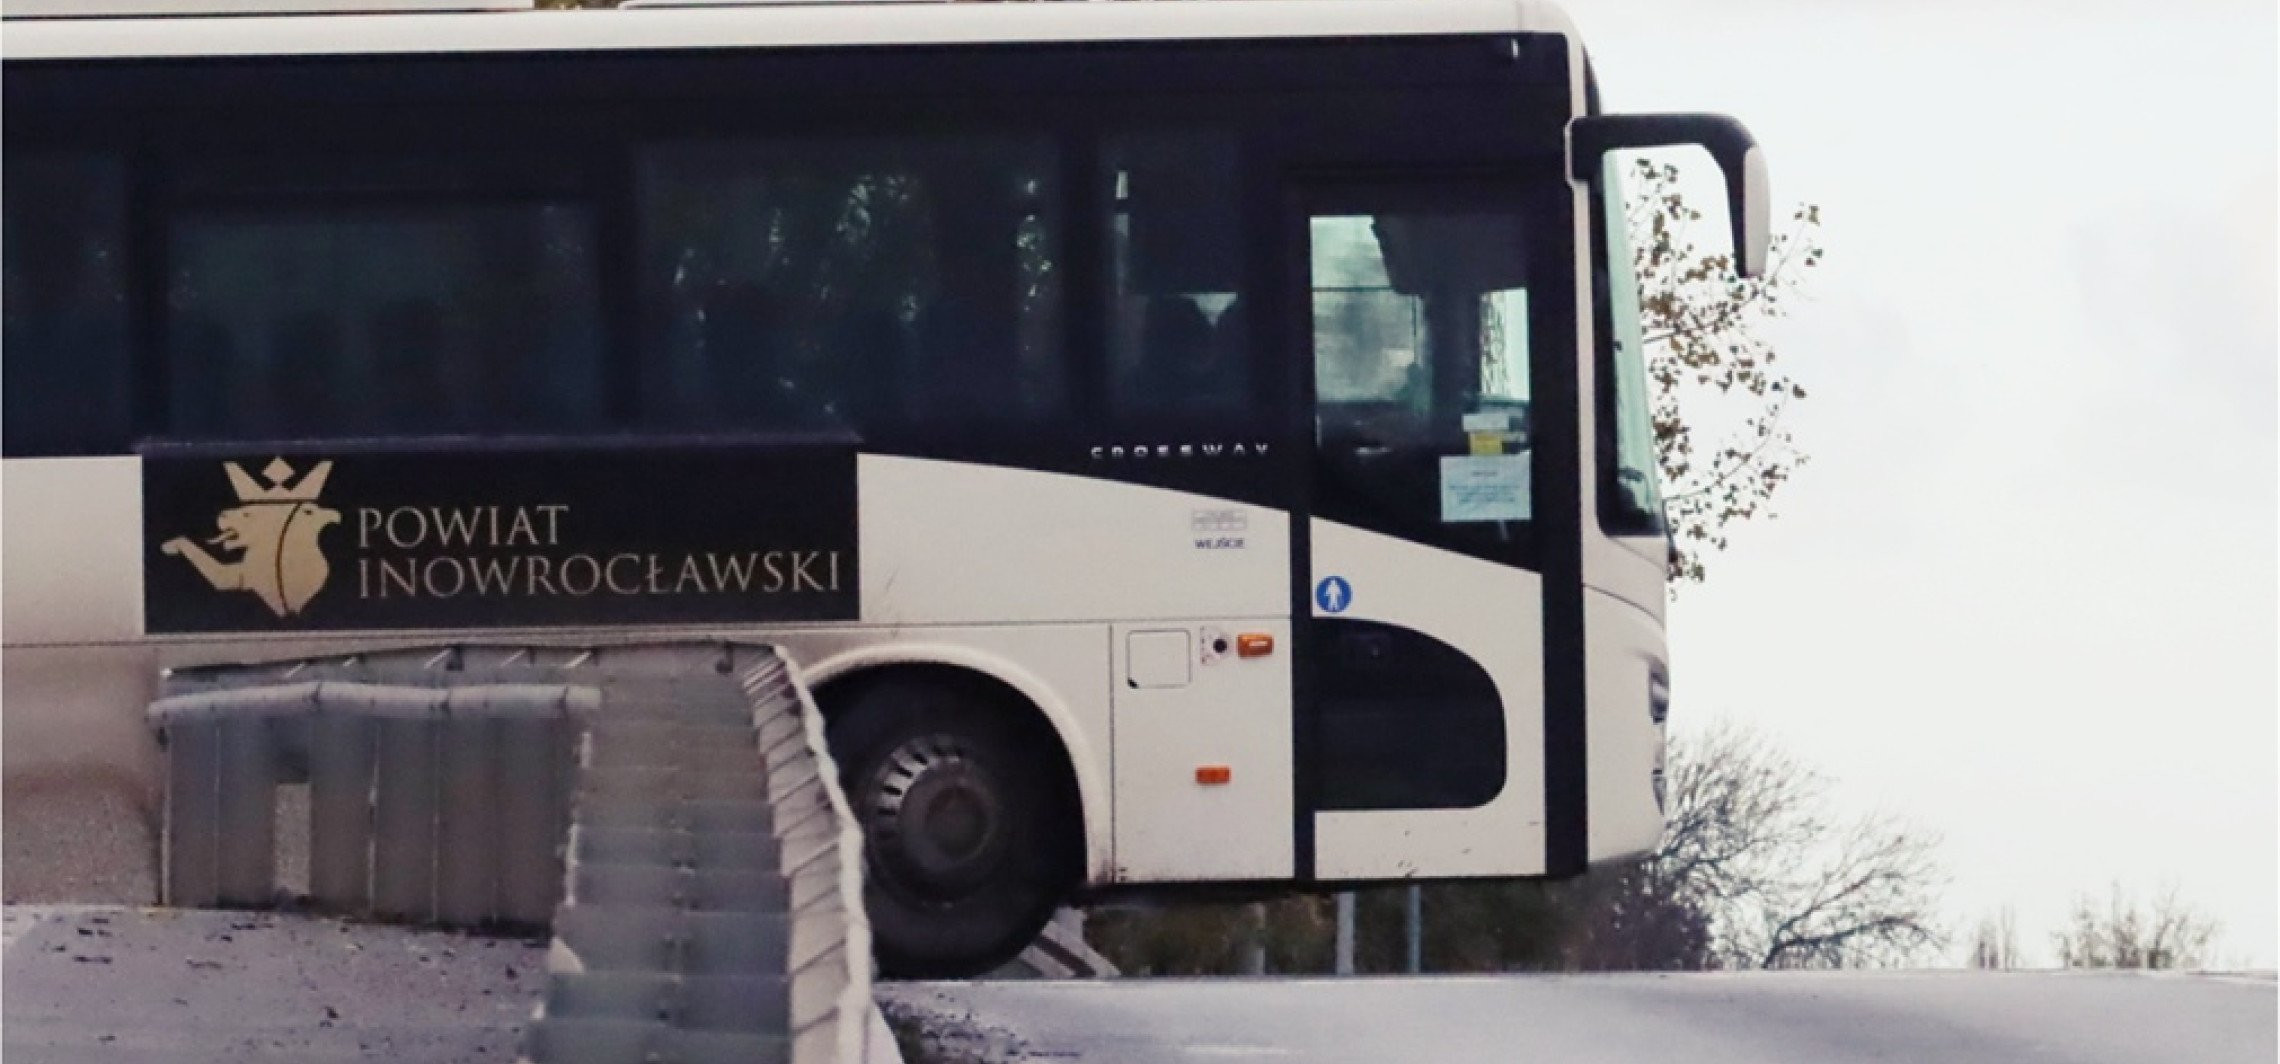 Inowrocław - Powiatowe autobusy przewiozły 4 tys. pasażerów